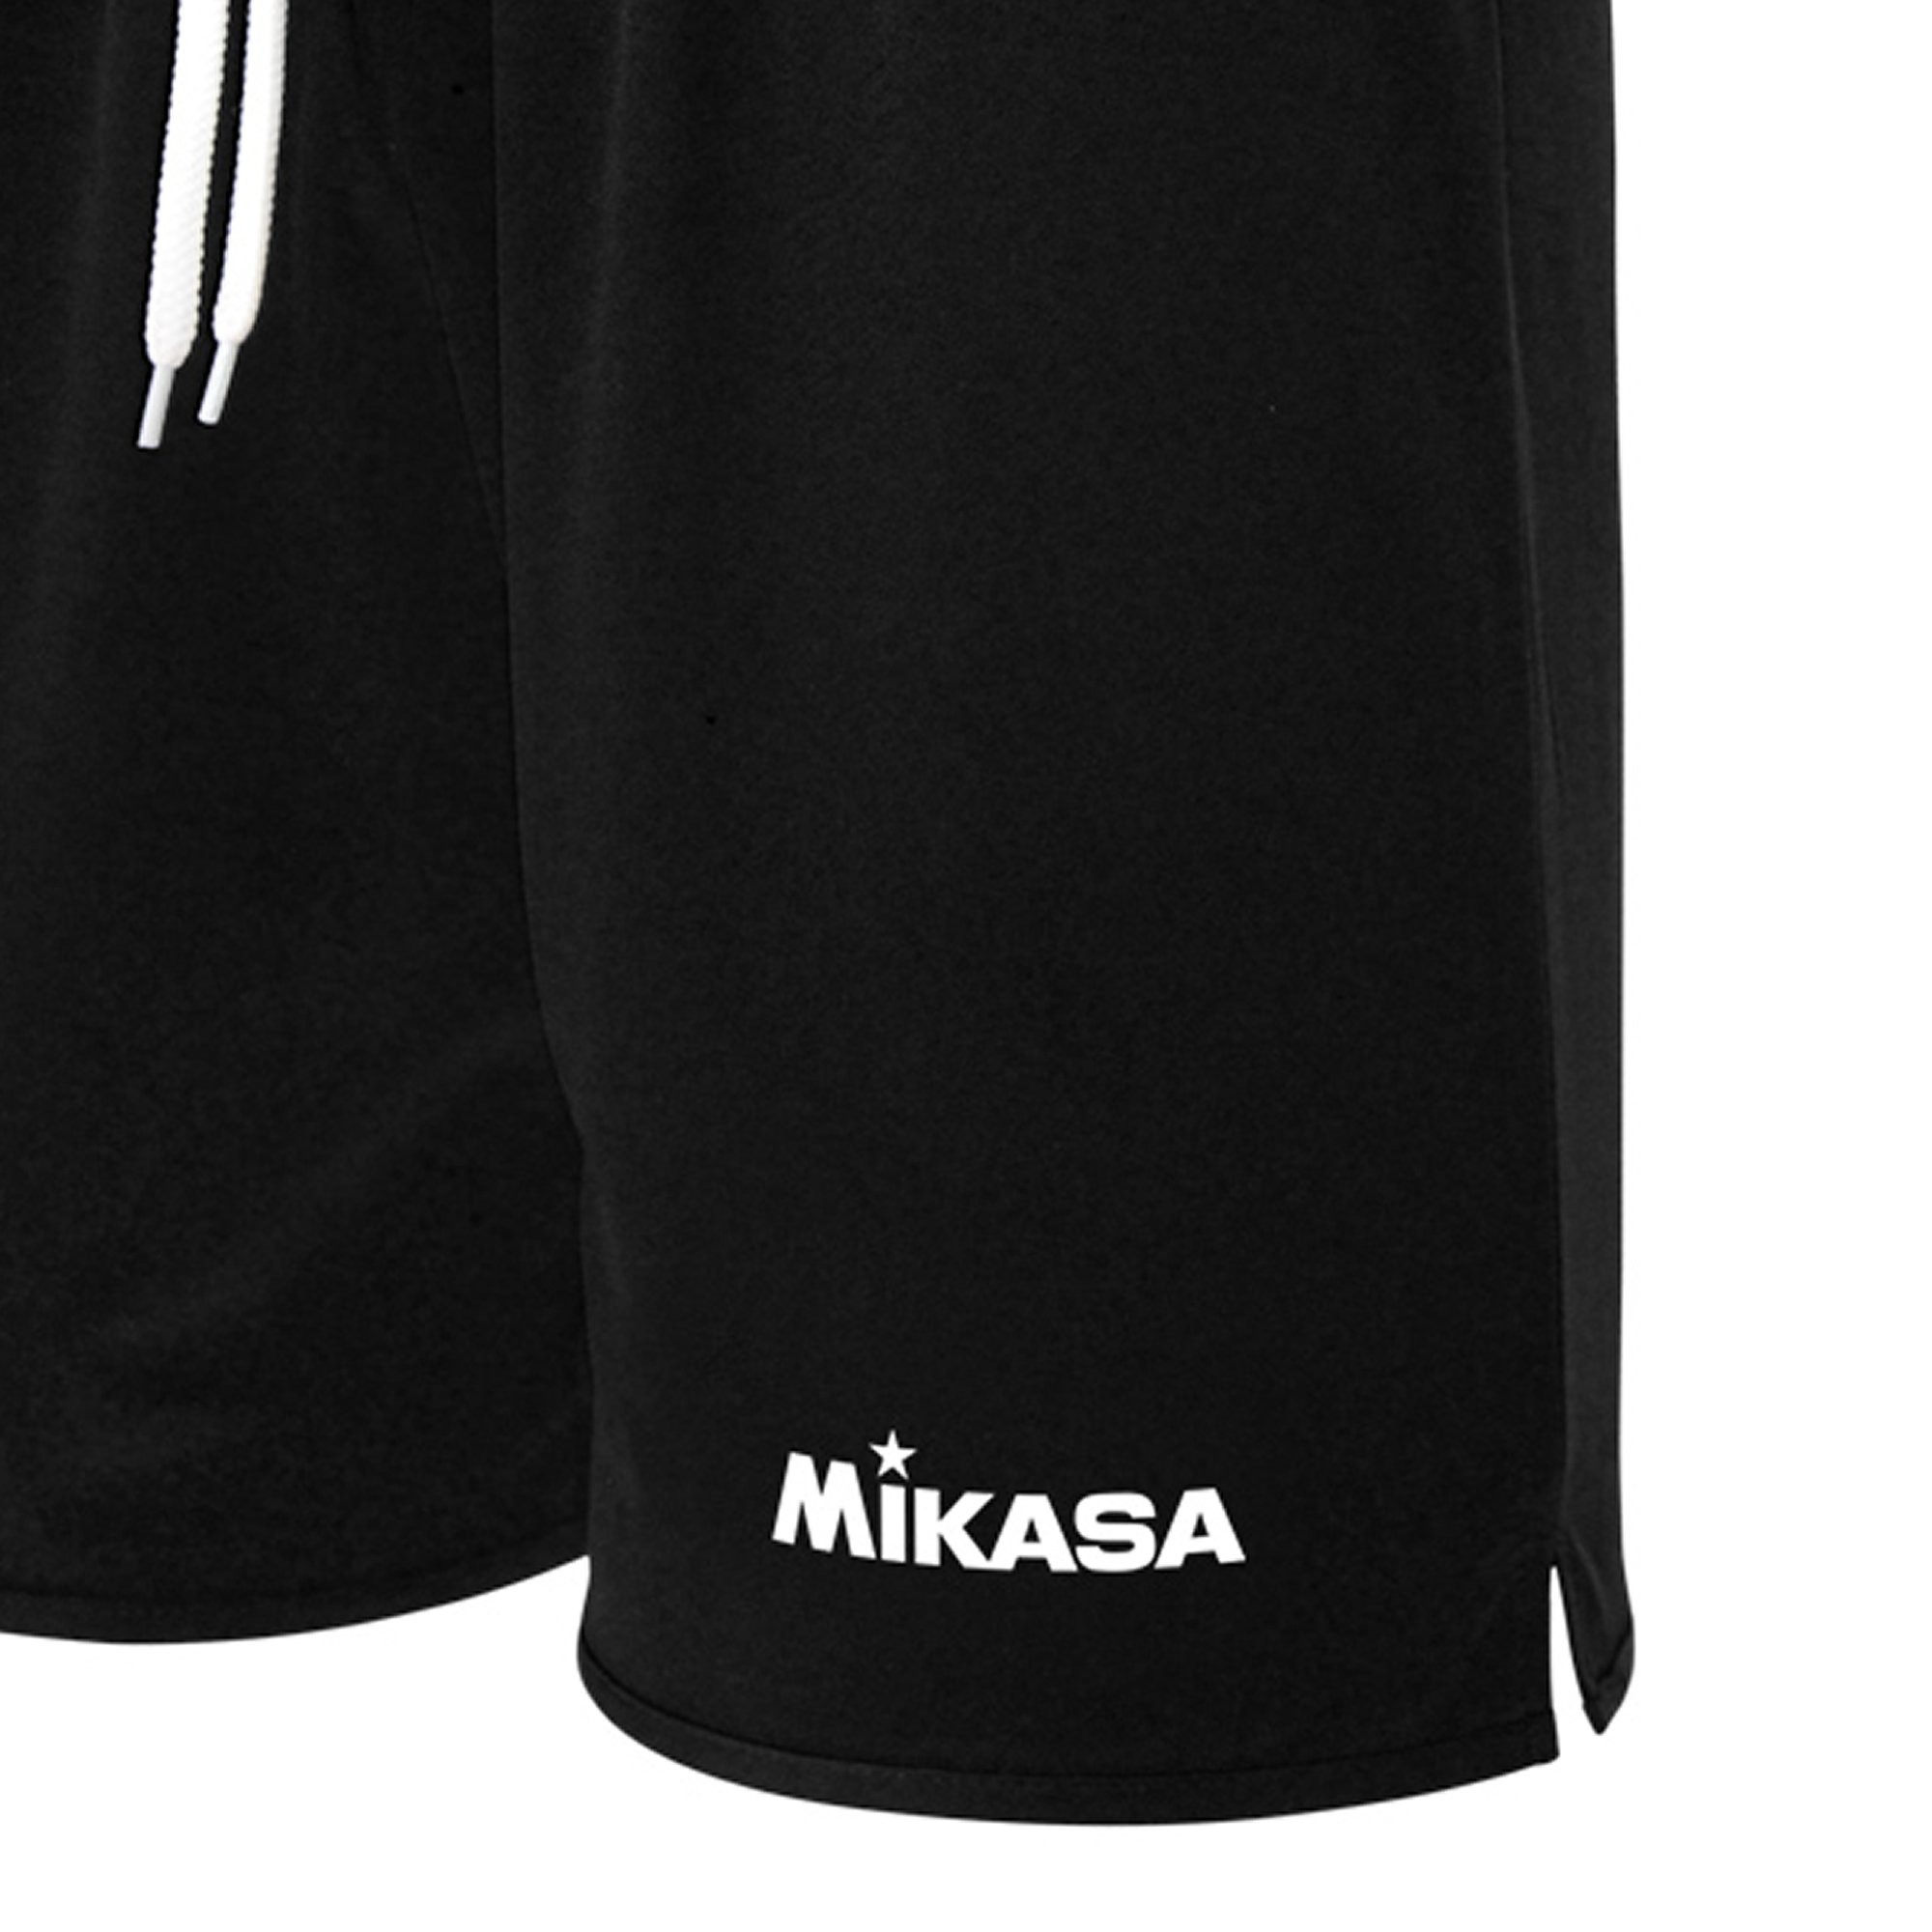 Mikasa Beach Basic Shorts